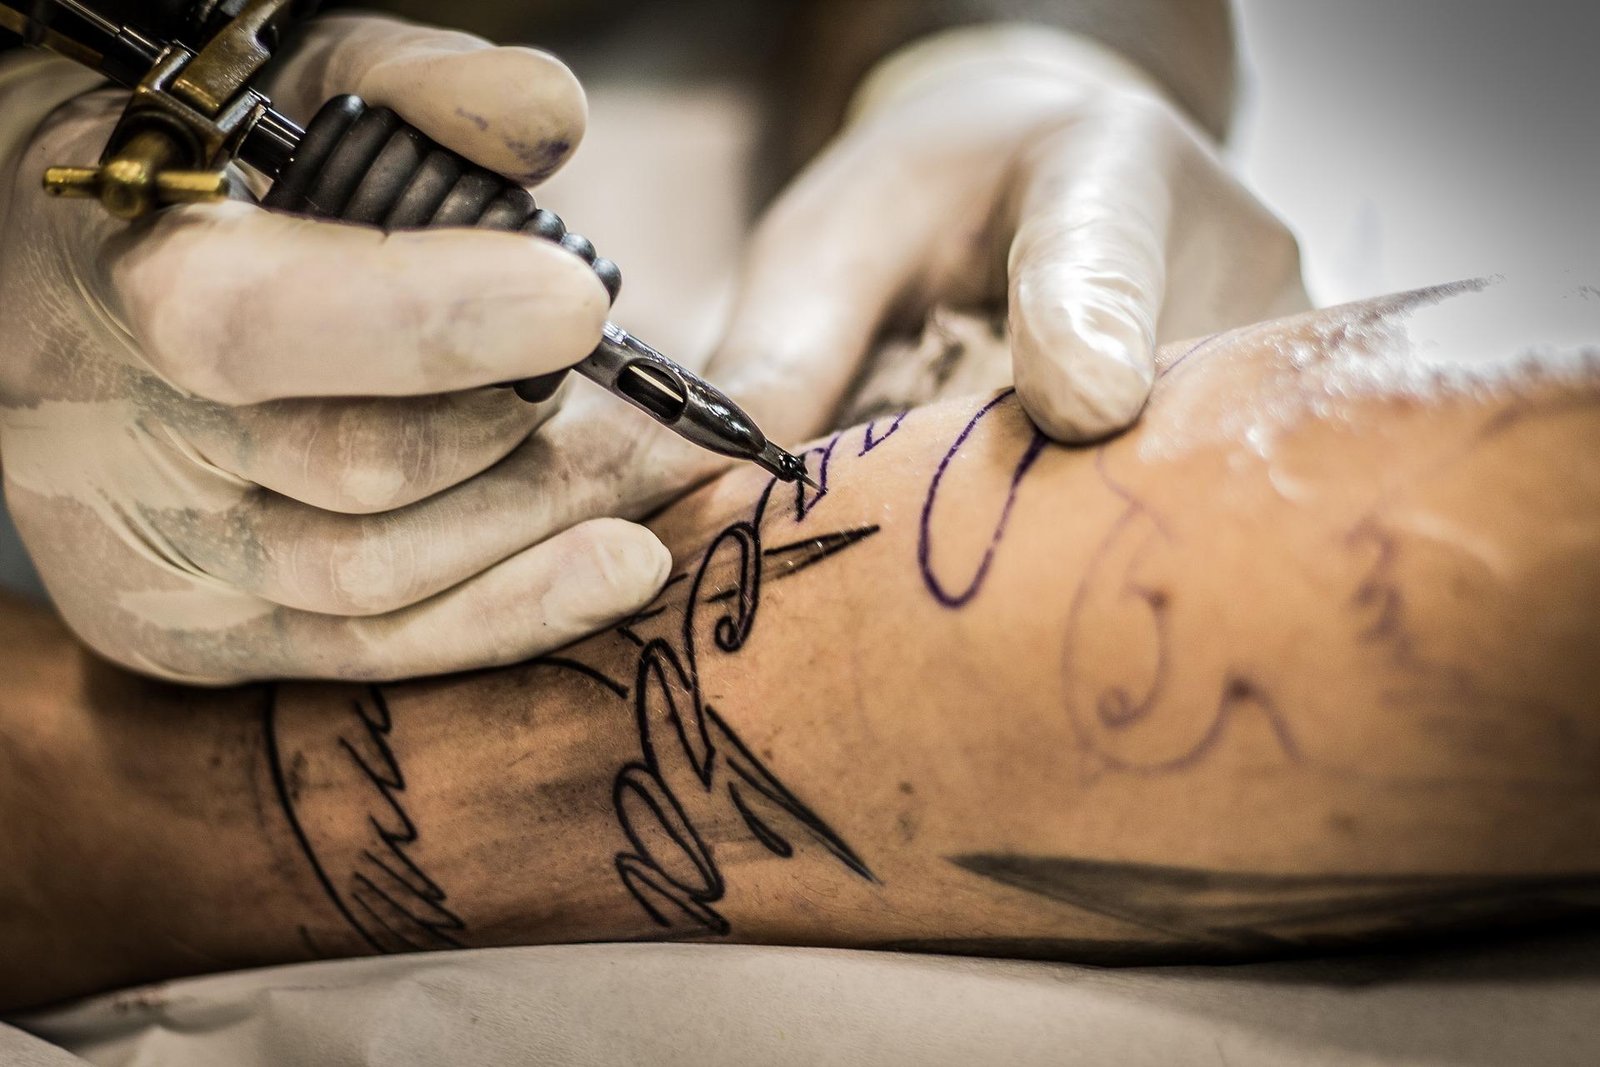 Tatuajes y piercings son más frecuentes entre quienes sufrieron abusos y abandono en la infancia